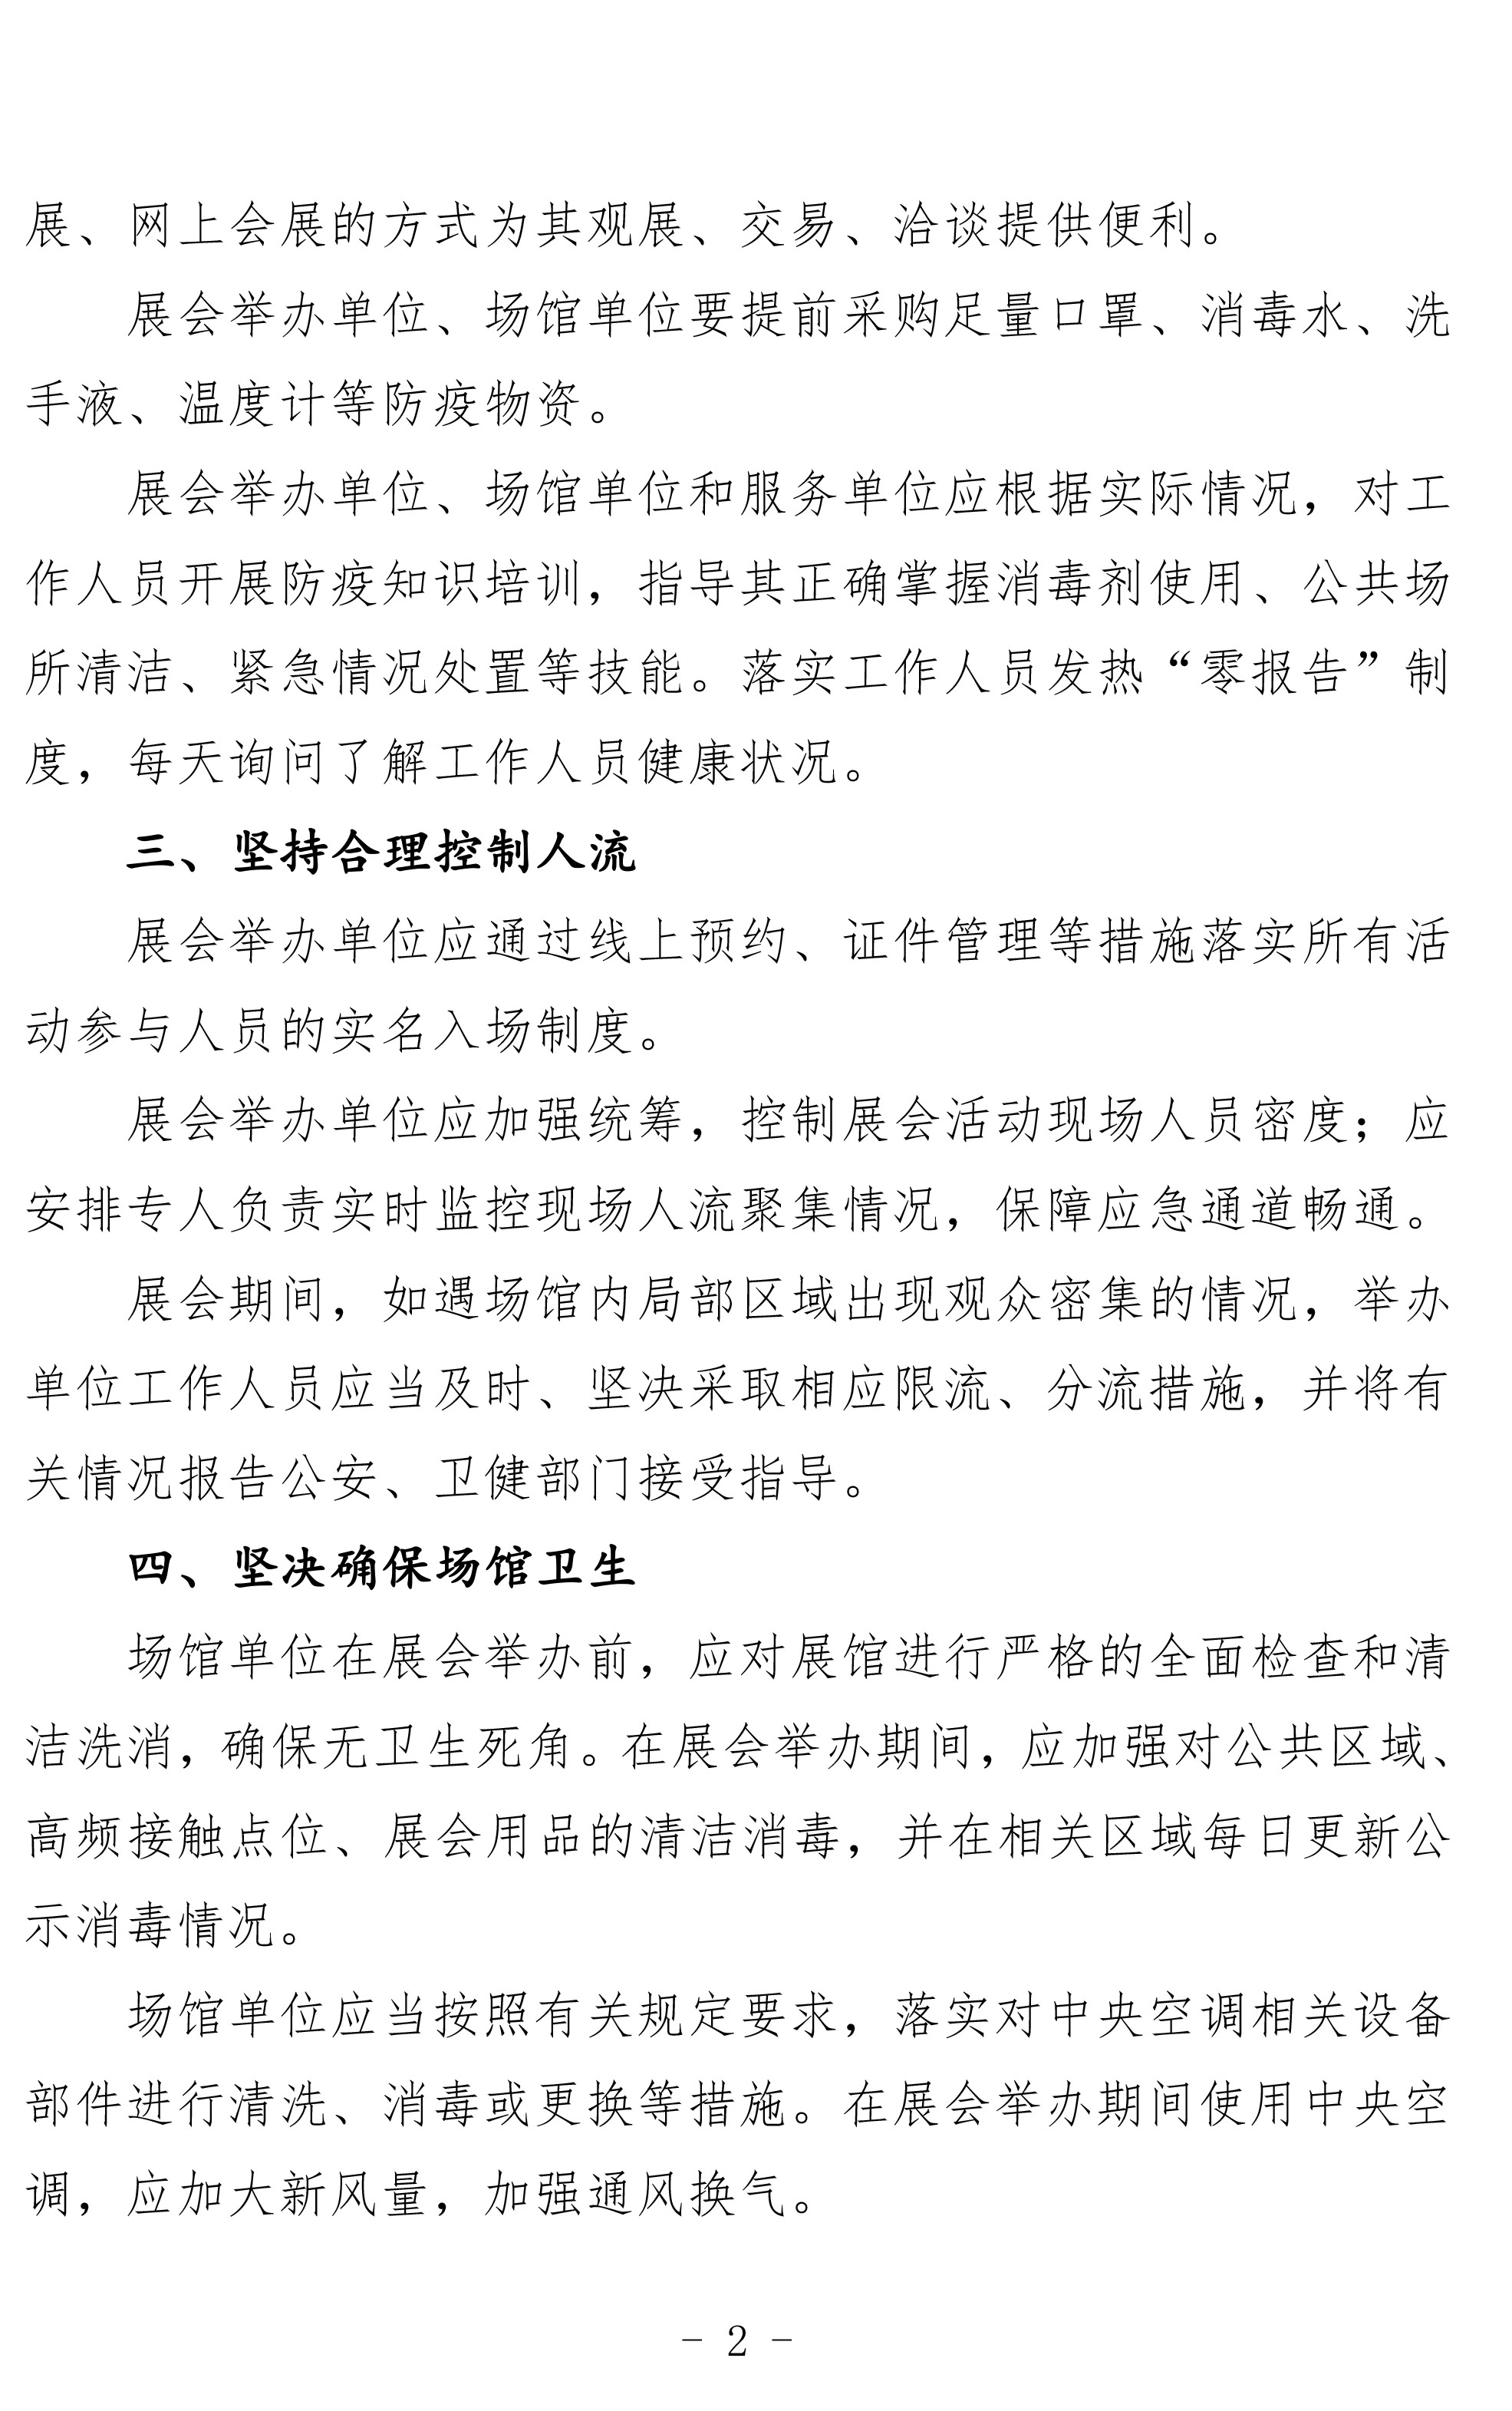 上海市商务委员会关于统筹做好举办会展活动和防疫防控工作的通知(图3)